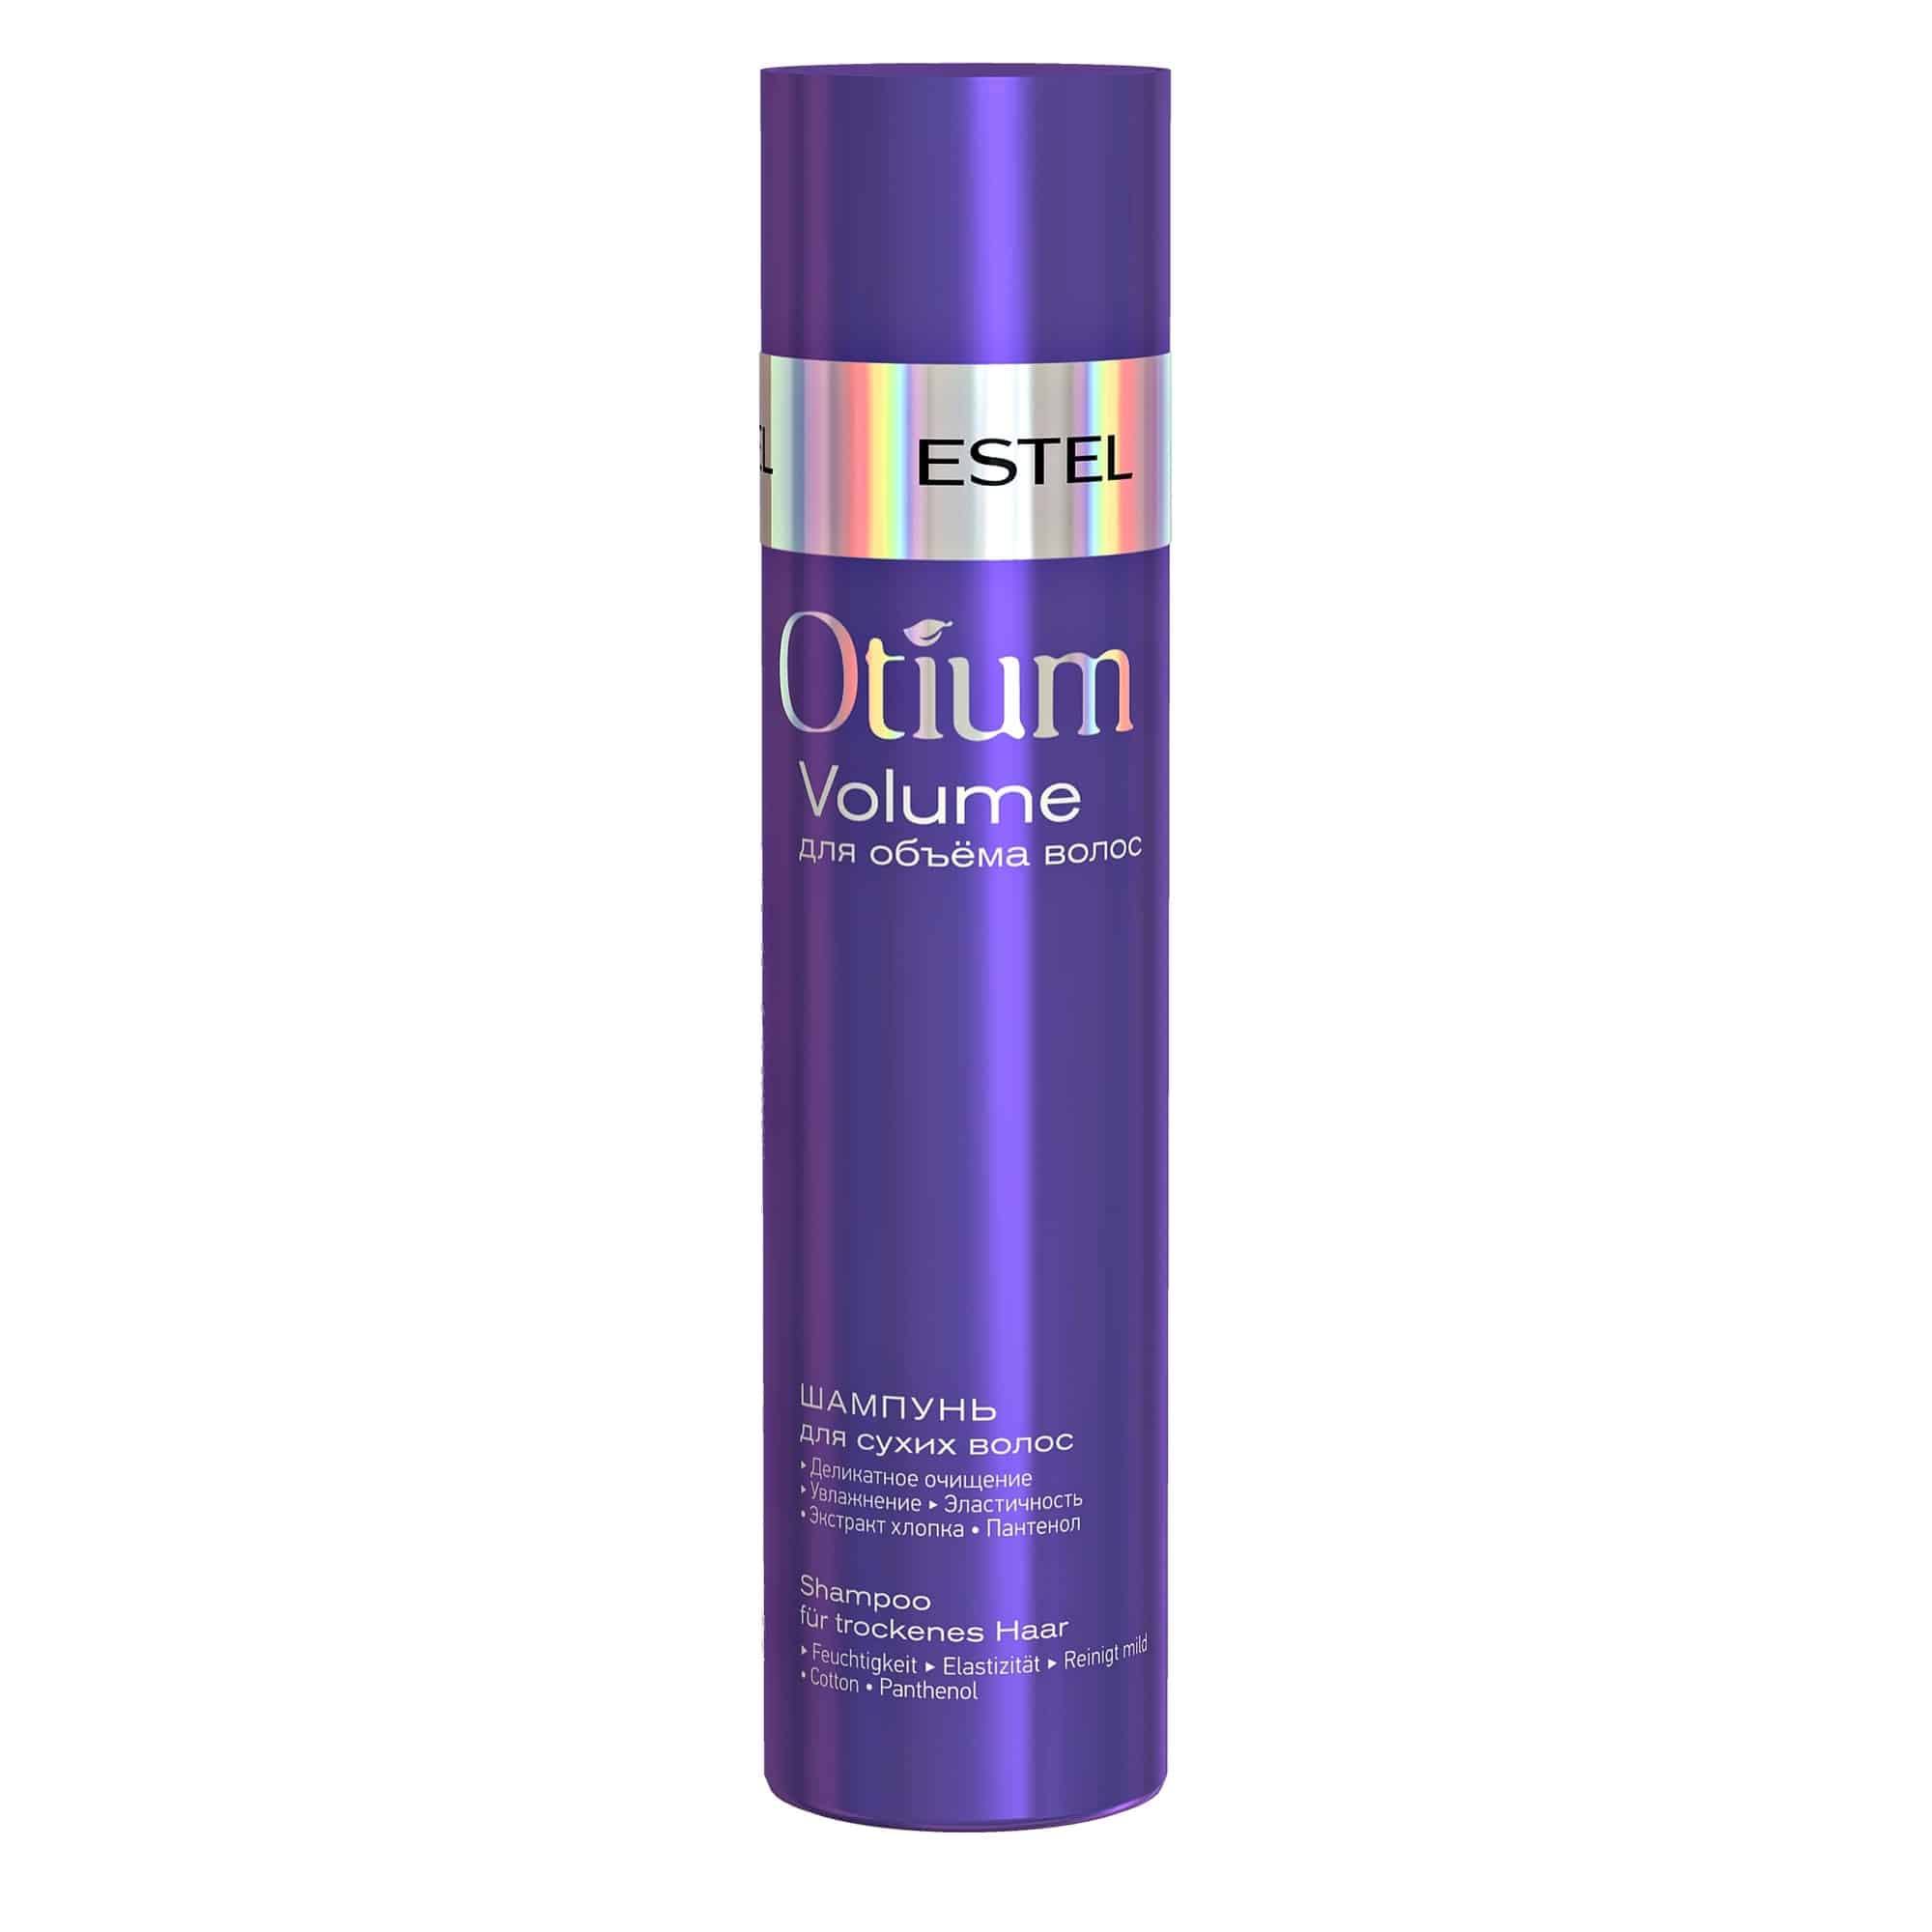 Otium Volume Shampoo für trockenes Haar von ESTEL